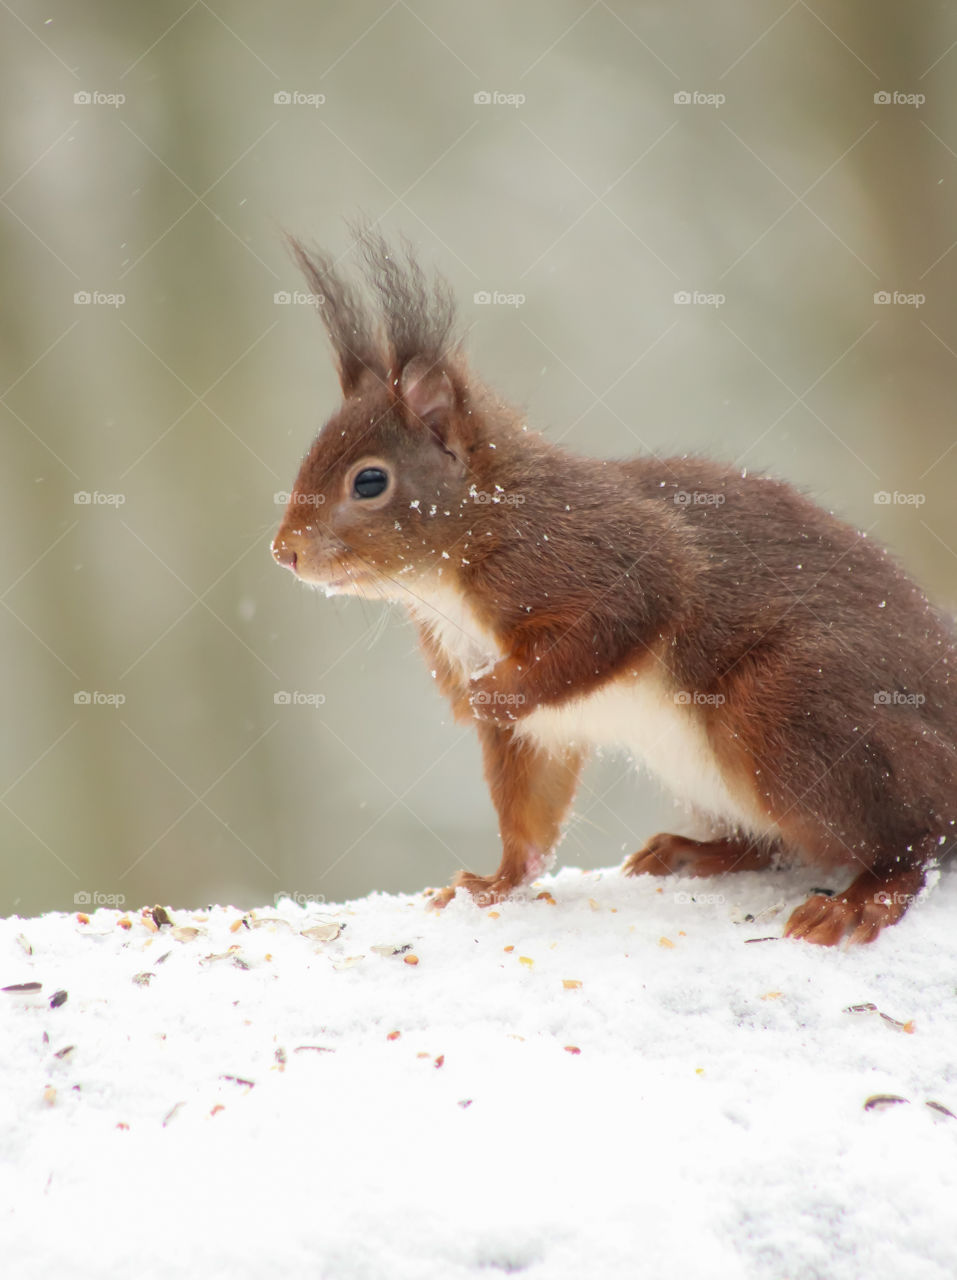 Squirrel posture in snow